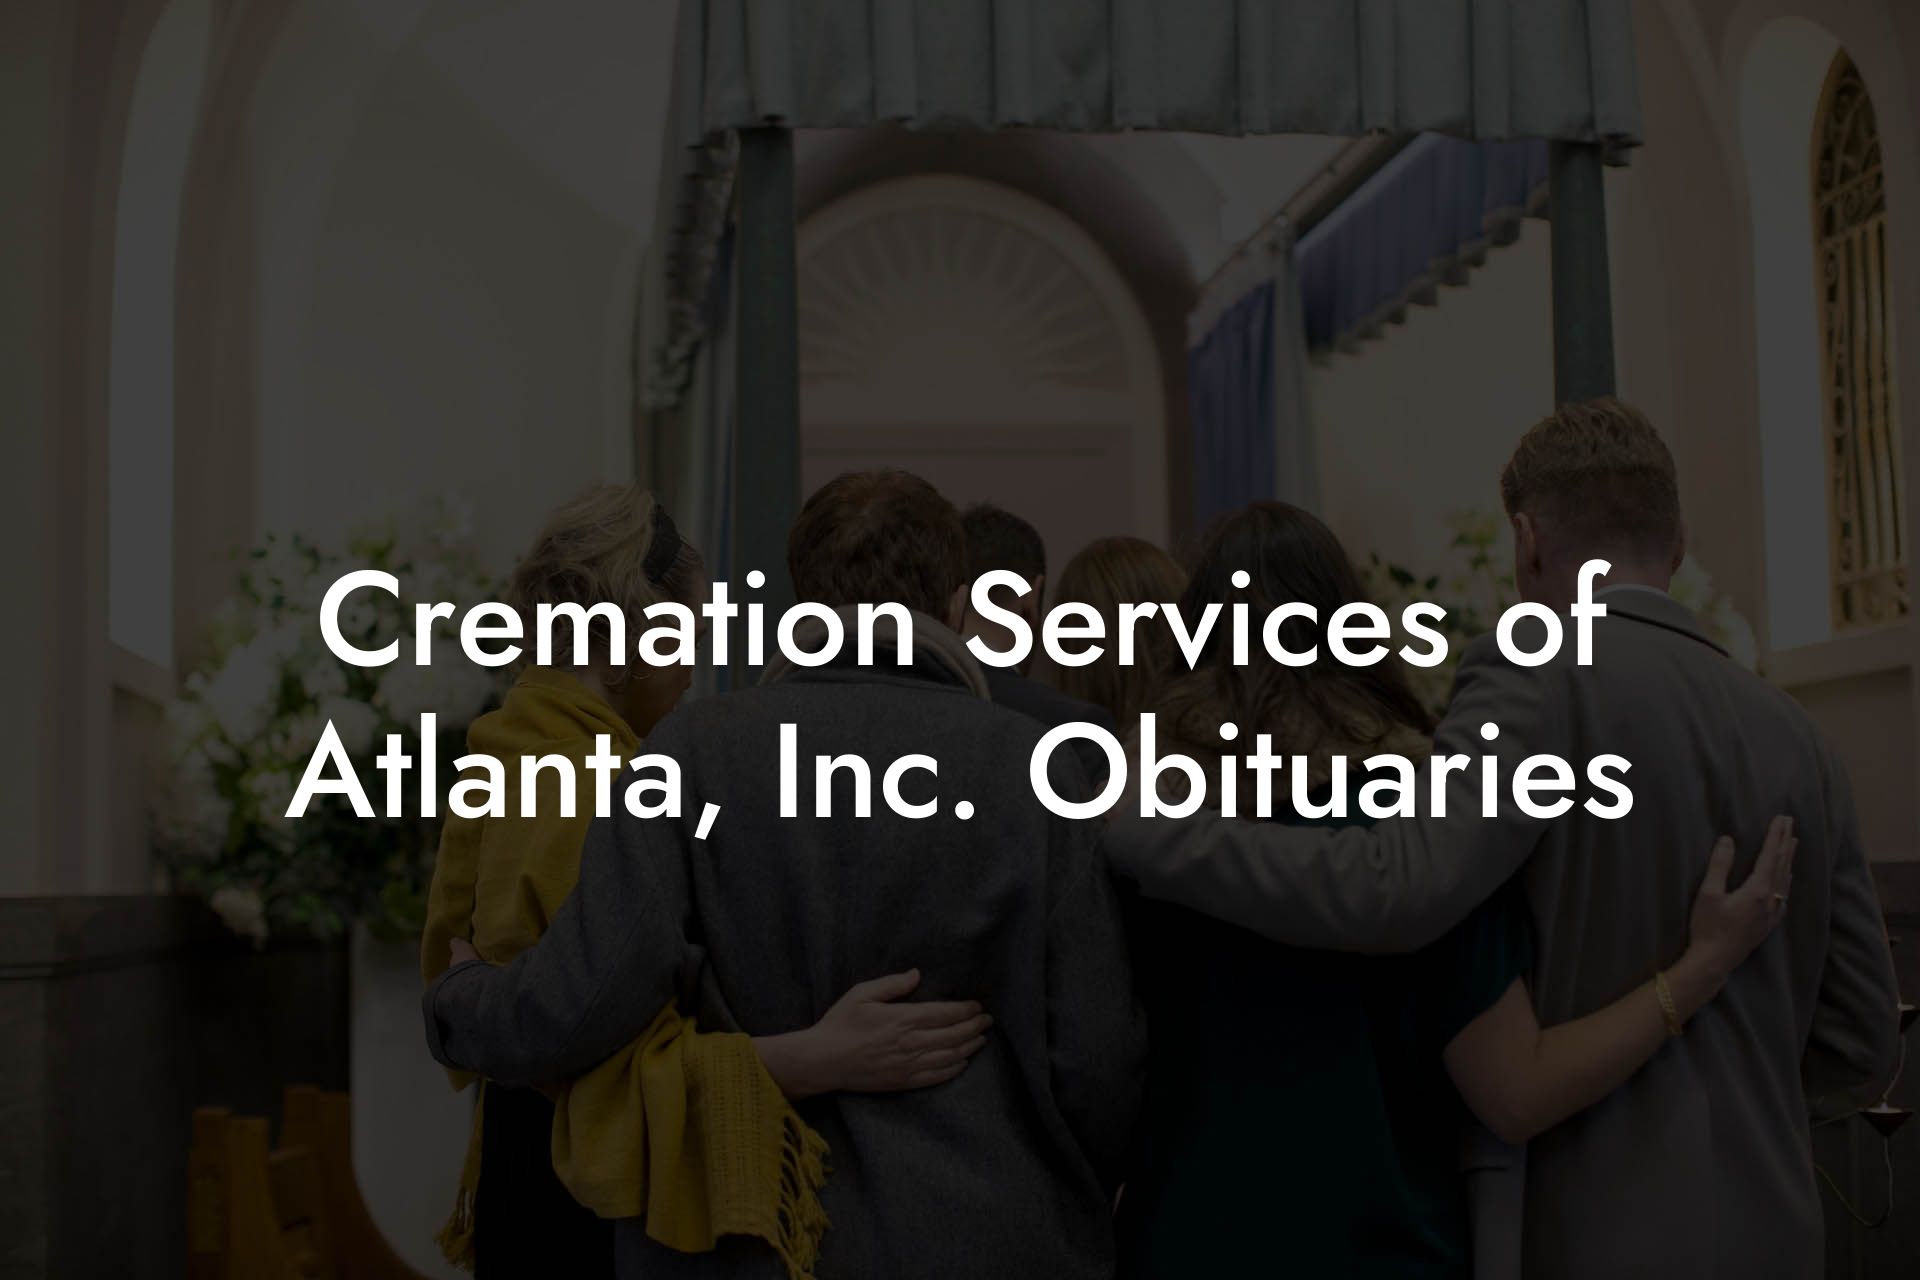 Cremation Services of Atlanta, Inc. Obituaries